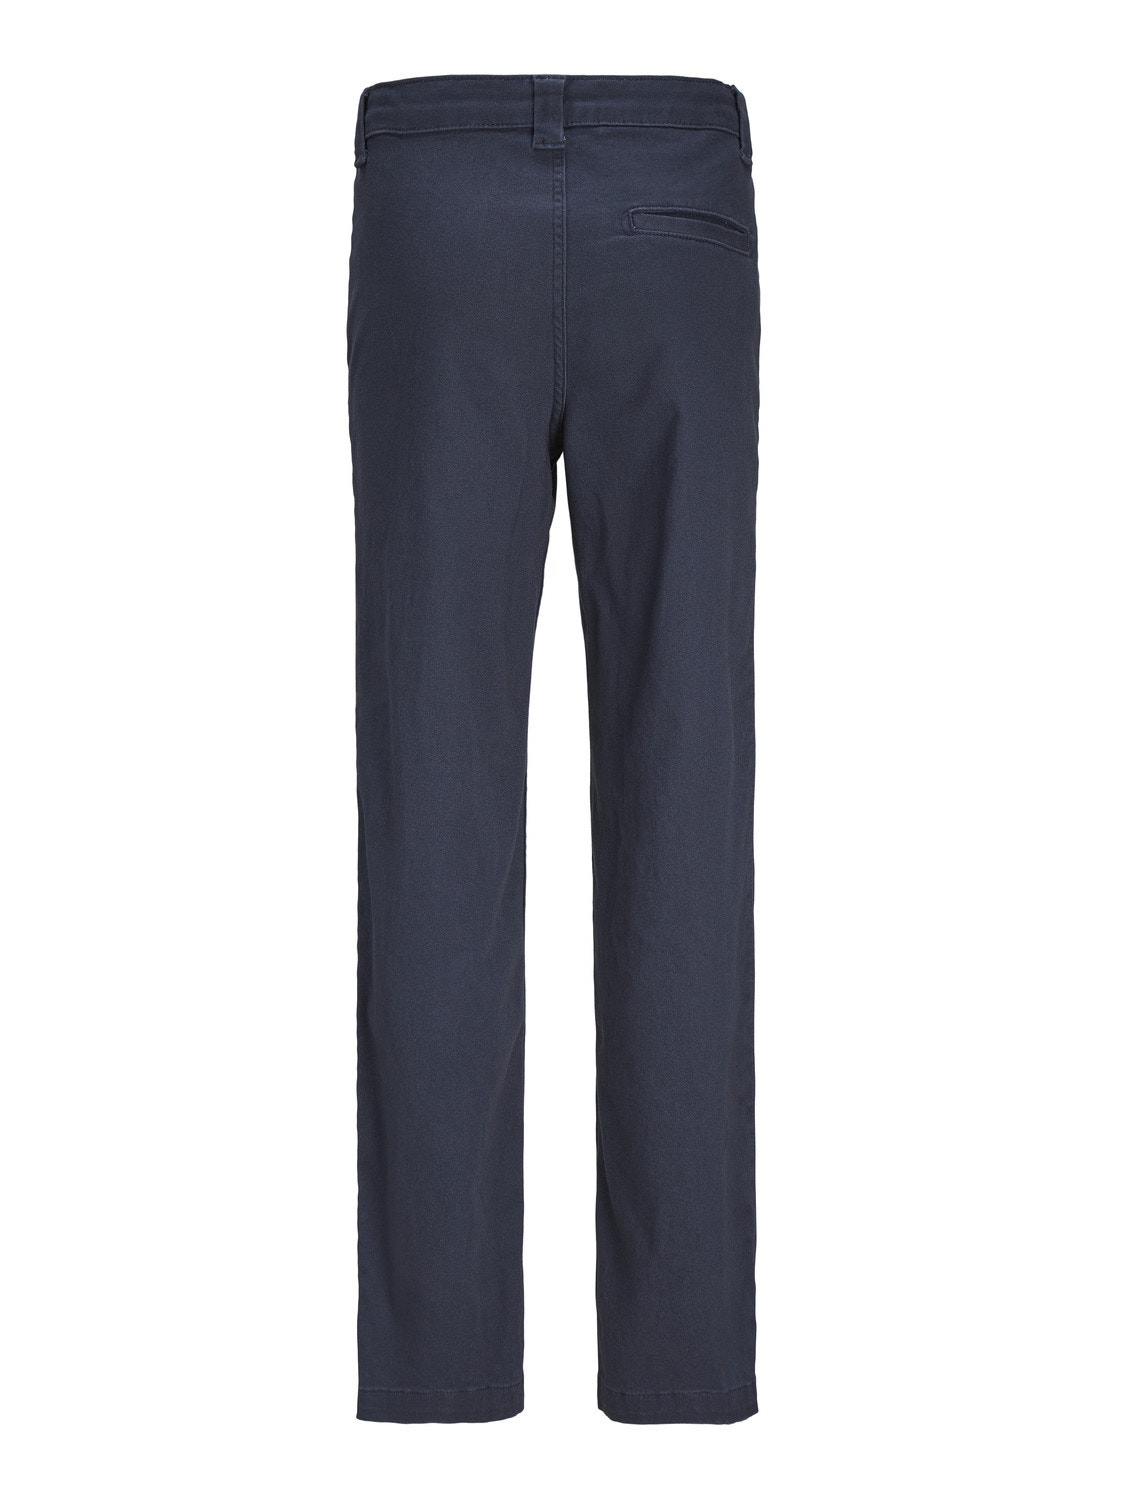 Jack & Jones Pantalon classique Loose Fit Pour les garçons -Navy Blazer - 12247330